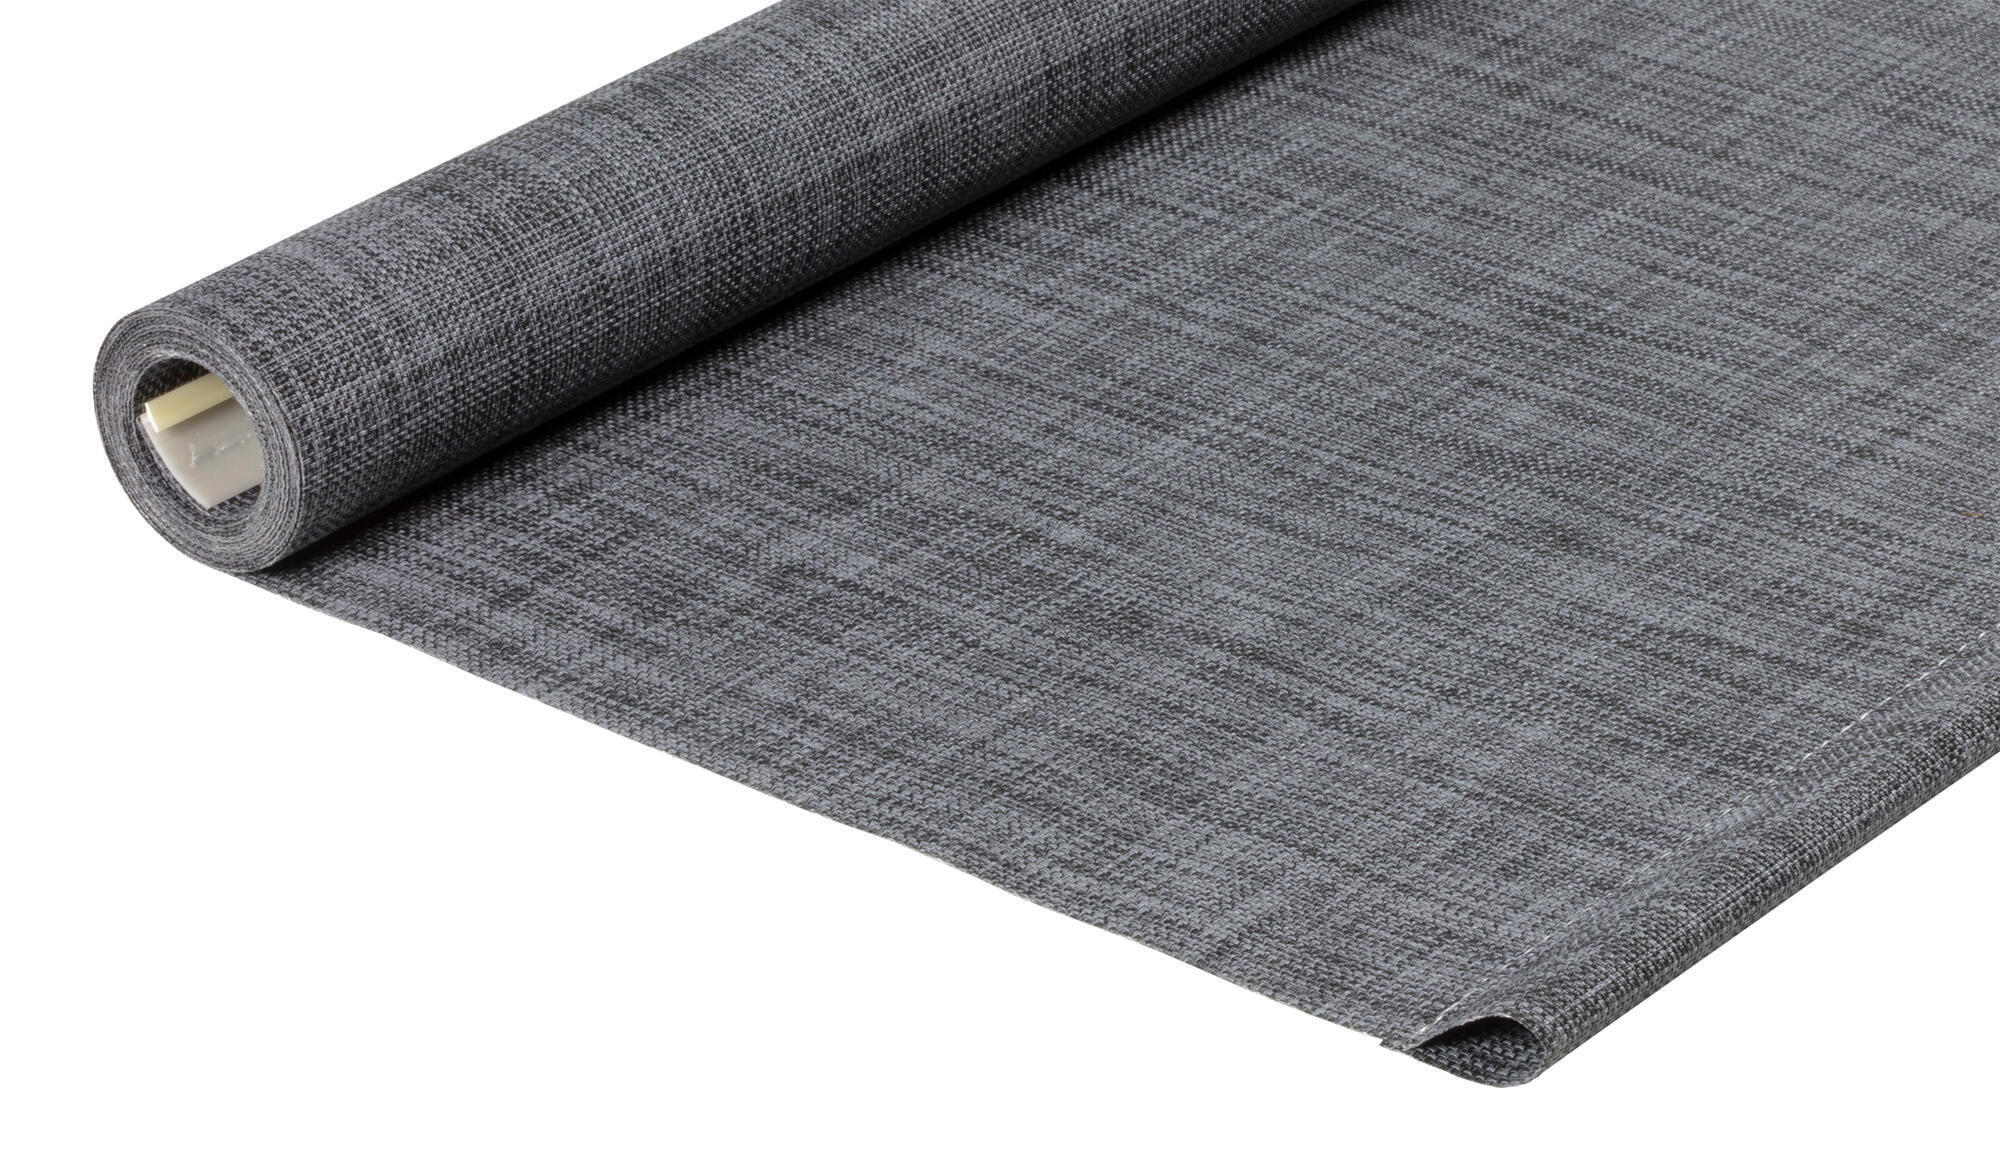 Tessuto per tende a rullo filtrante INSPIRE Puebla grigio / argento 115.8 x 250 cm - 2